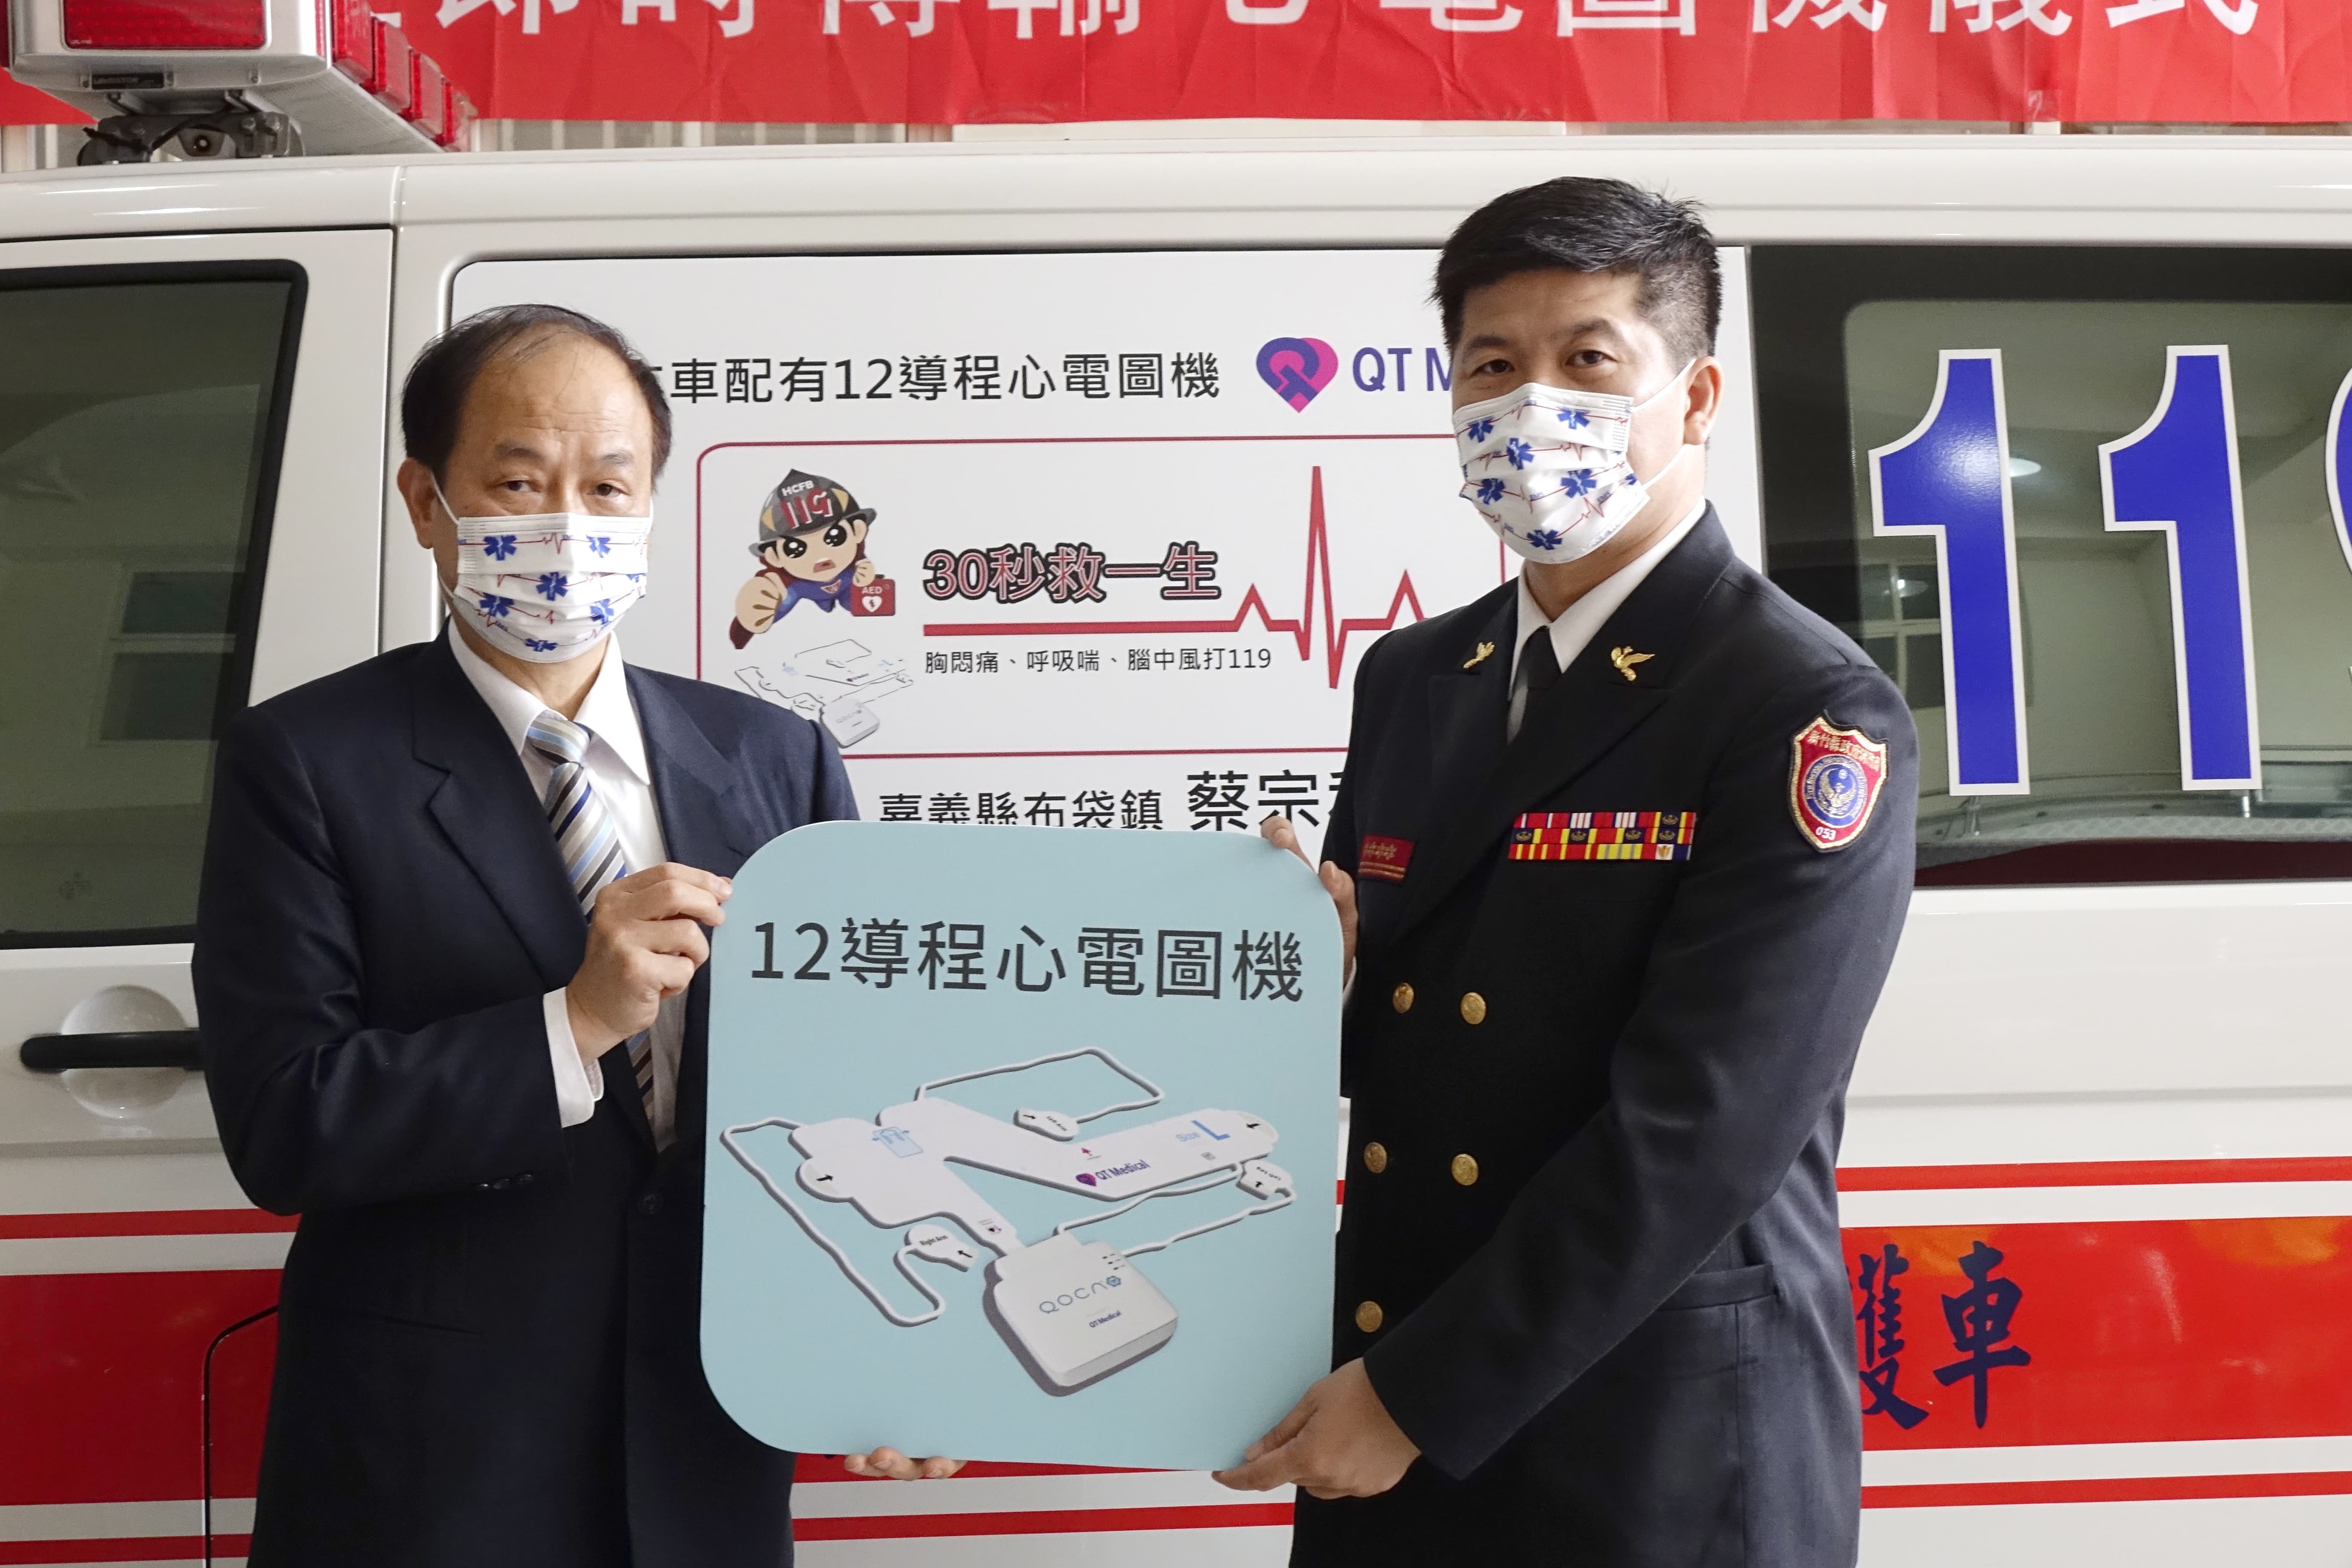 捐贈者代表捐贈12導程心電圖機予新竹消防局